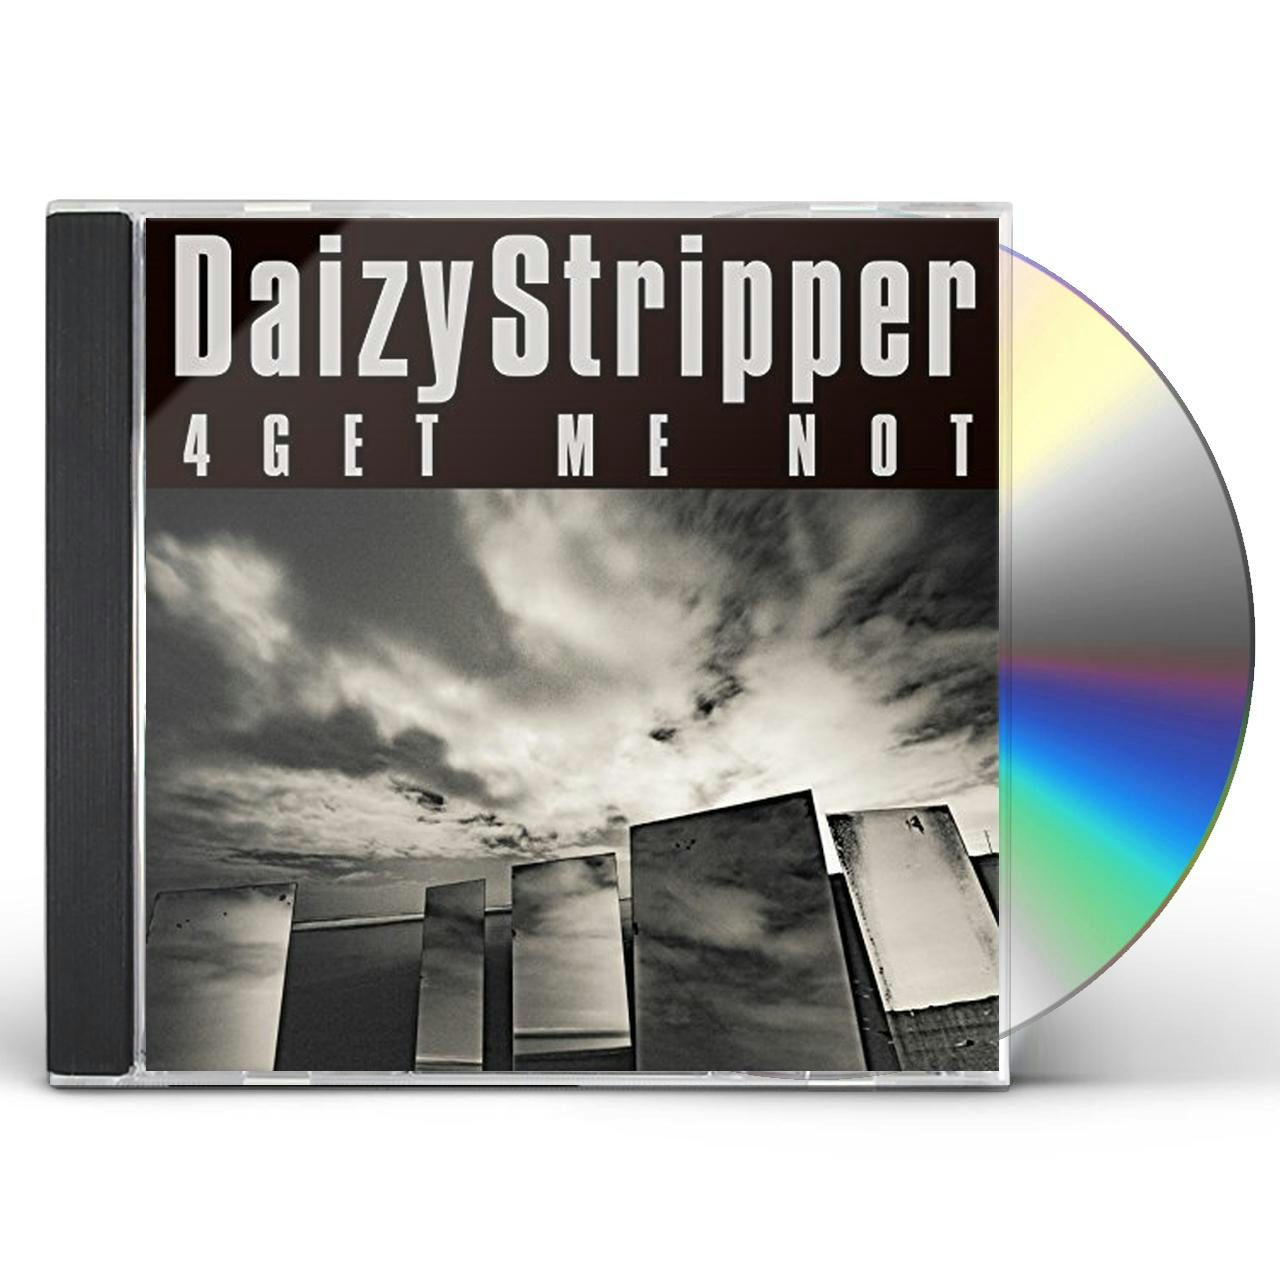 DaizyStripper 4GET ME NOT (VERSION B) CD